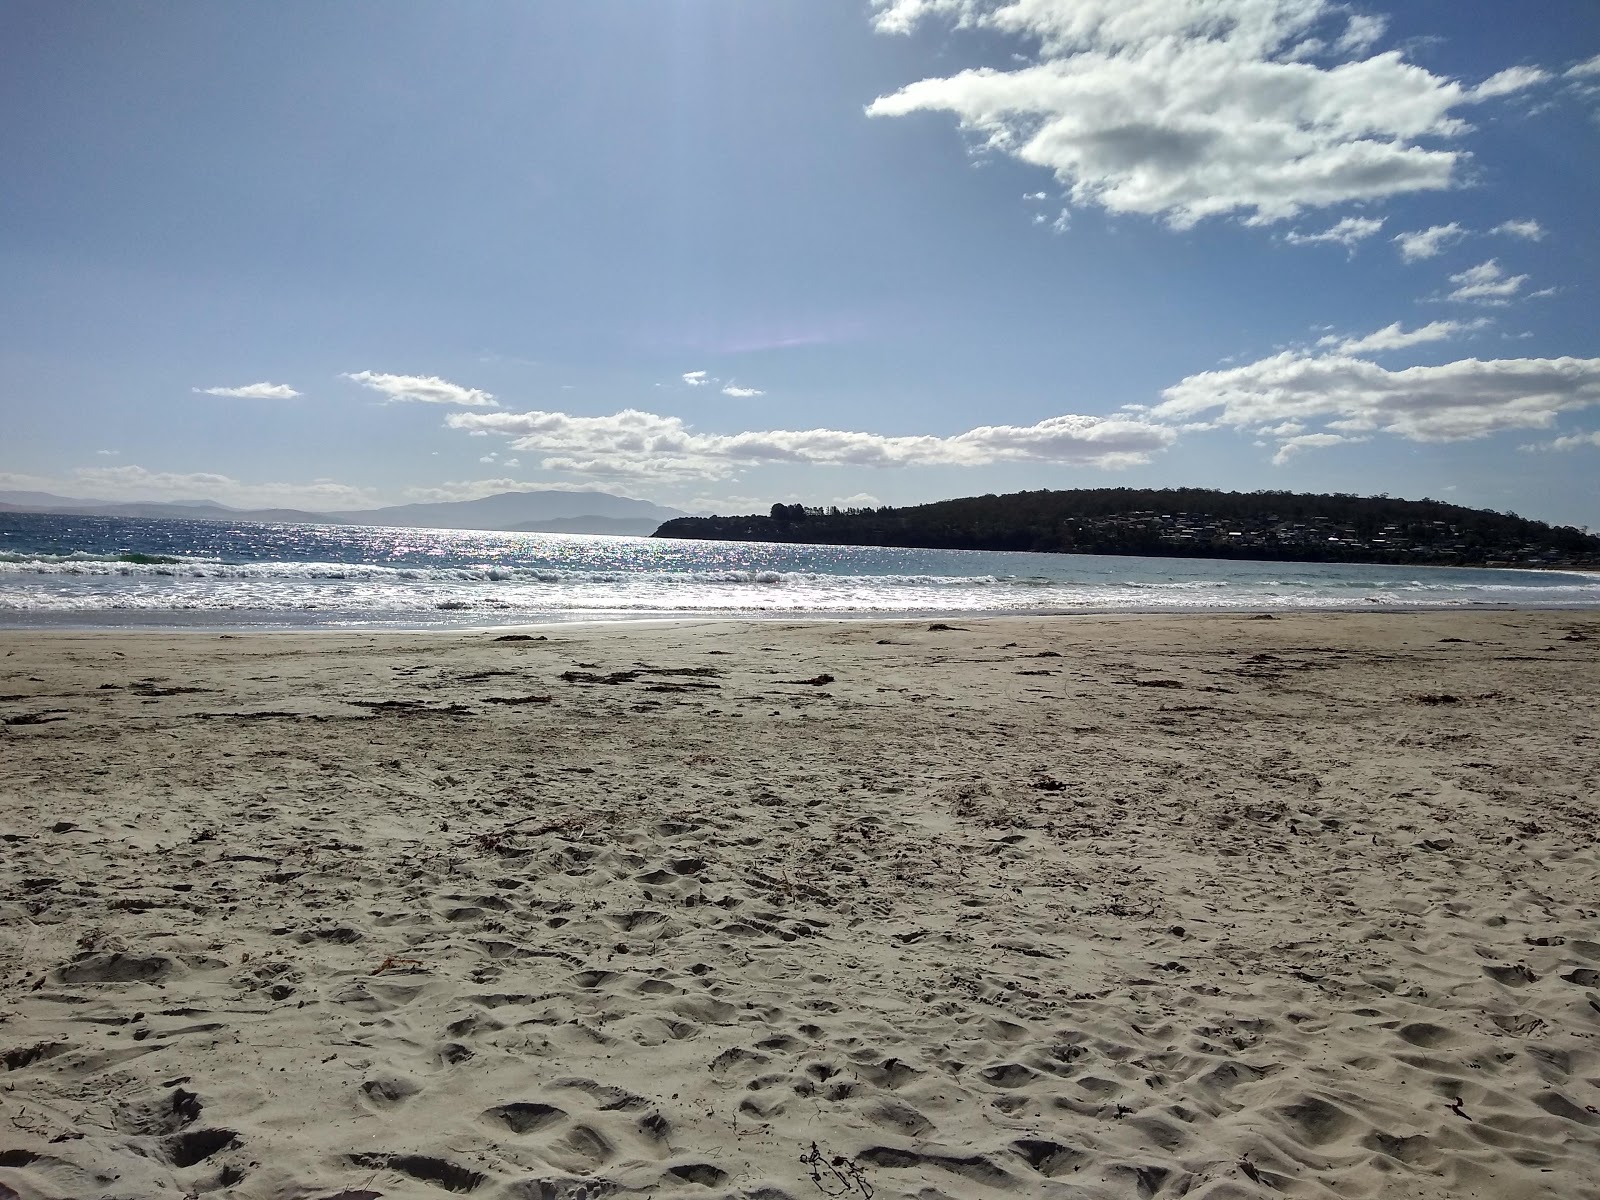 Fotografie cu Primrose Sands Beach - locul popular printre cunoscătorii de relaxare